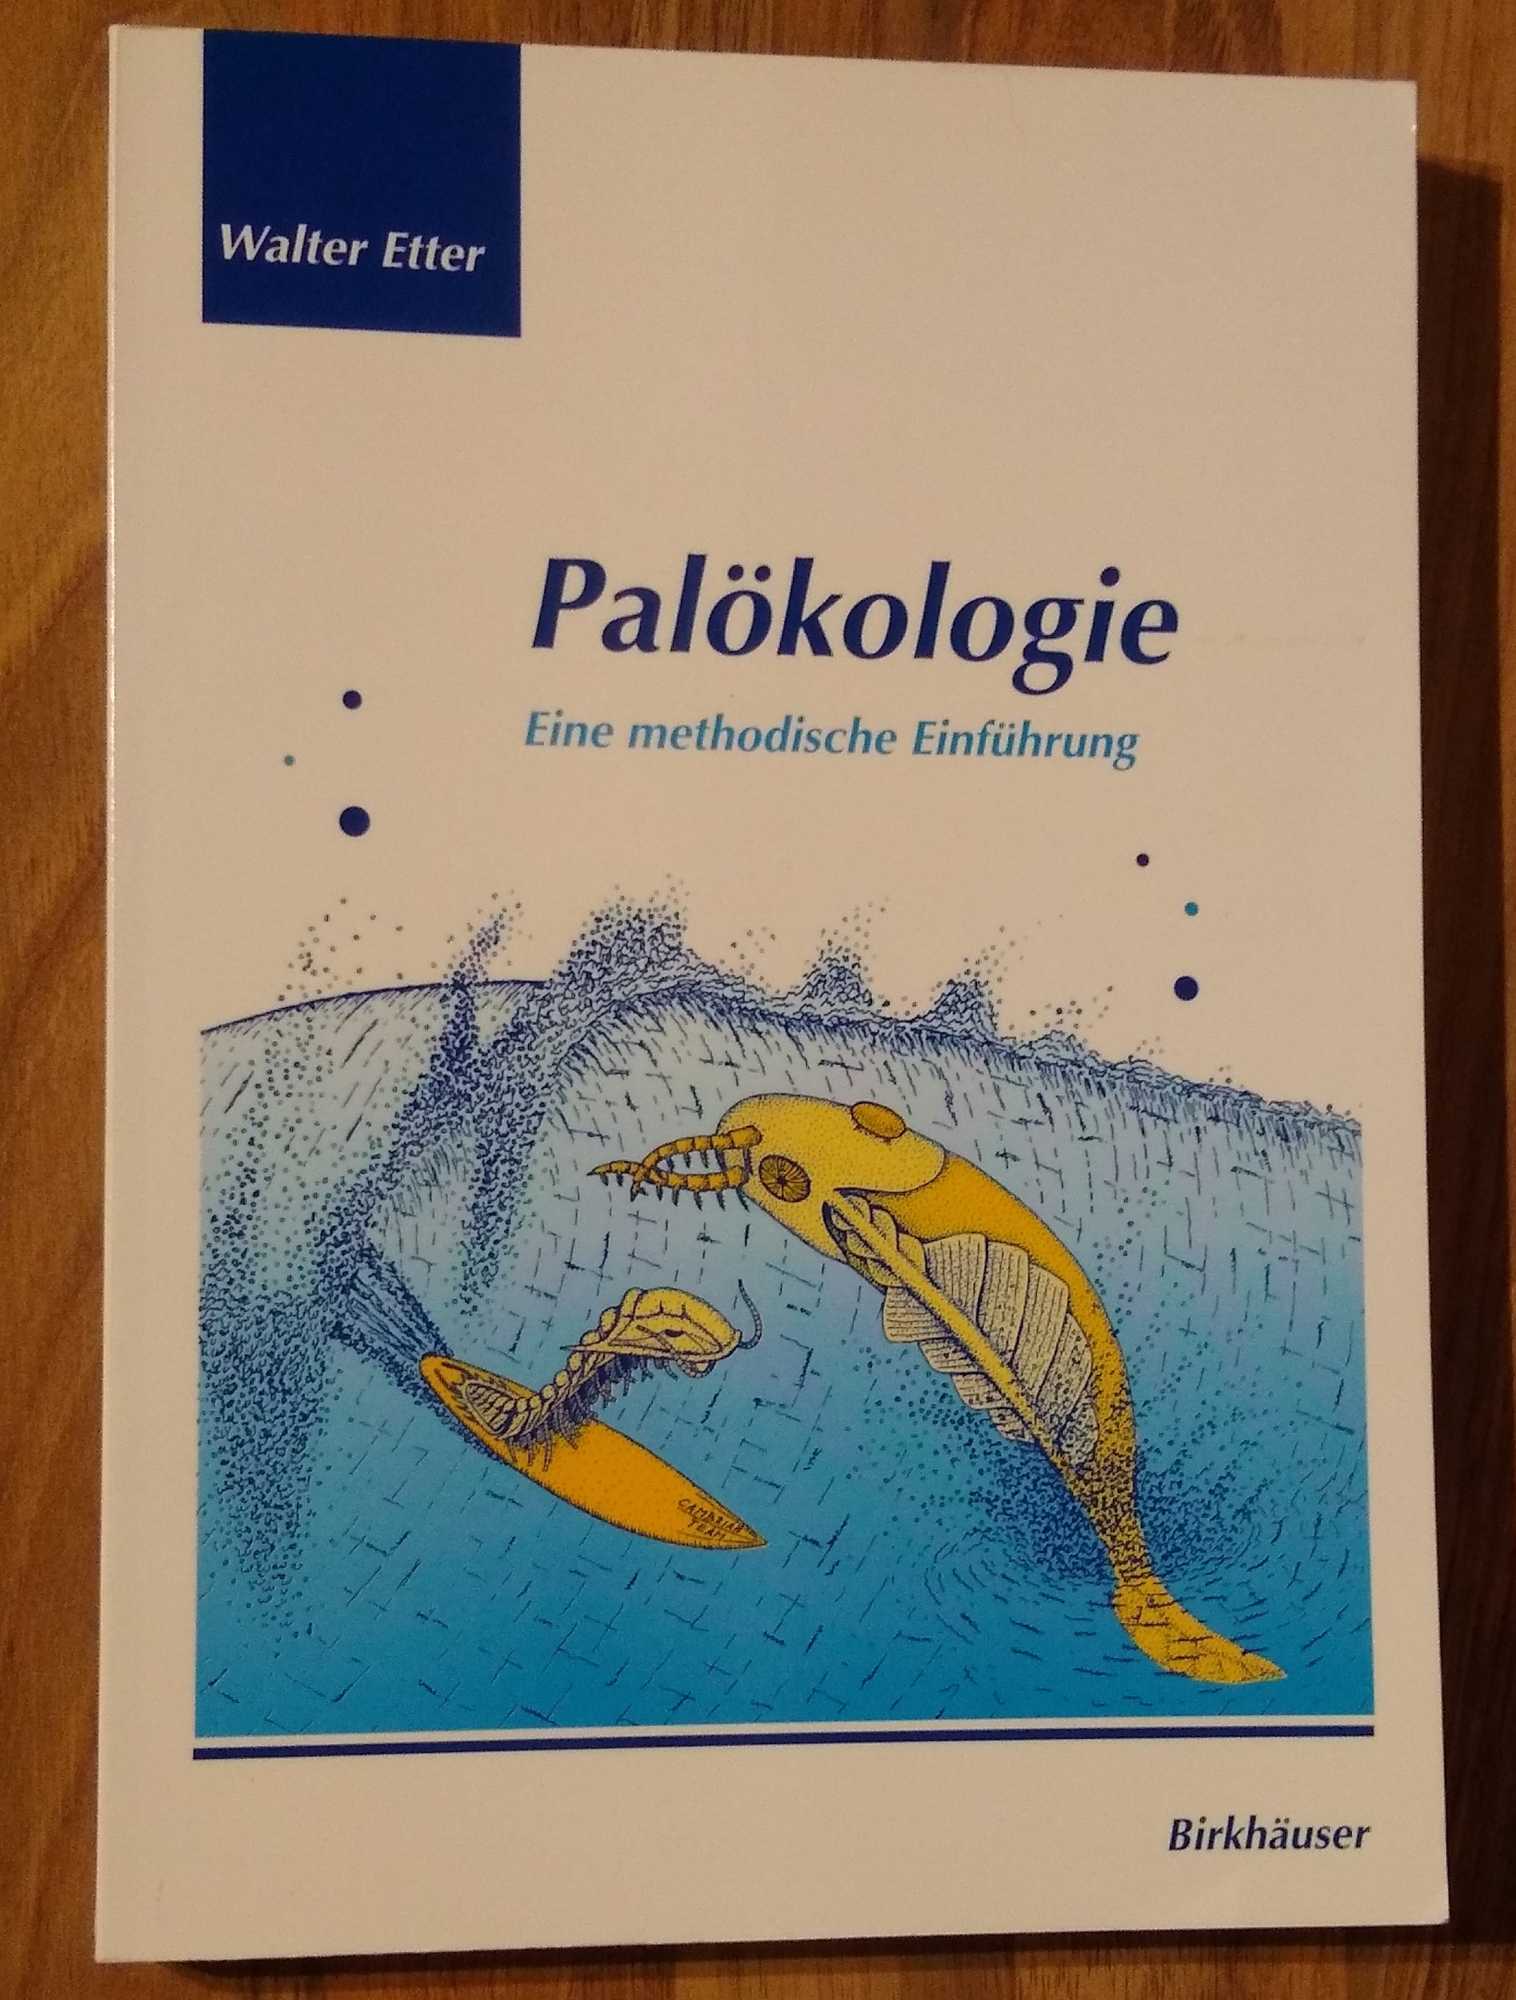 Palokologie. Eine methodische Einfuhrung - Etter, (Walter)